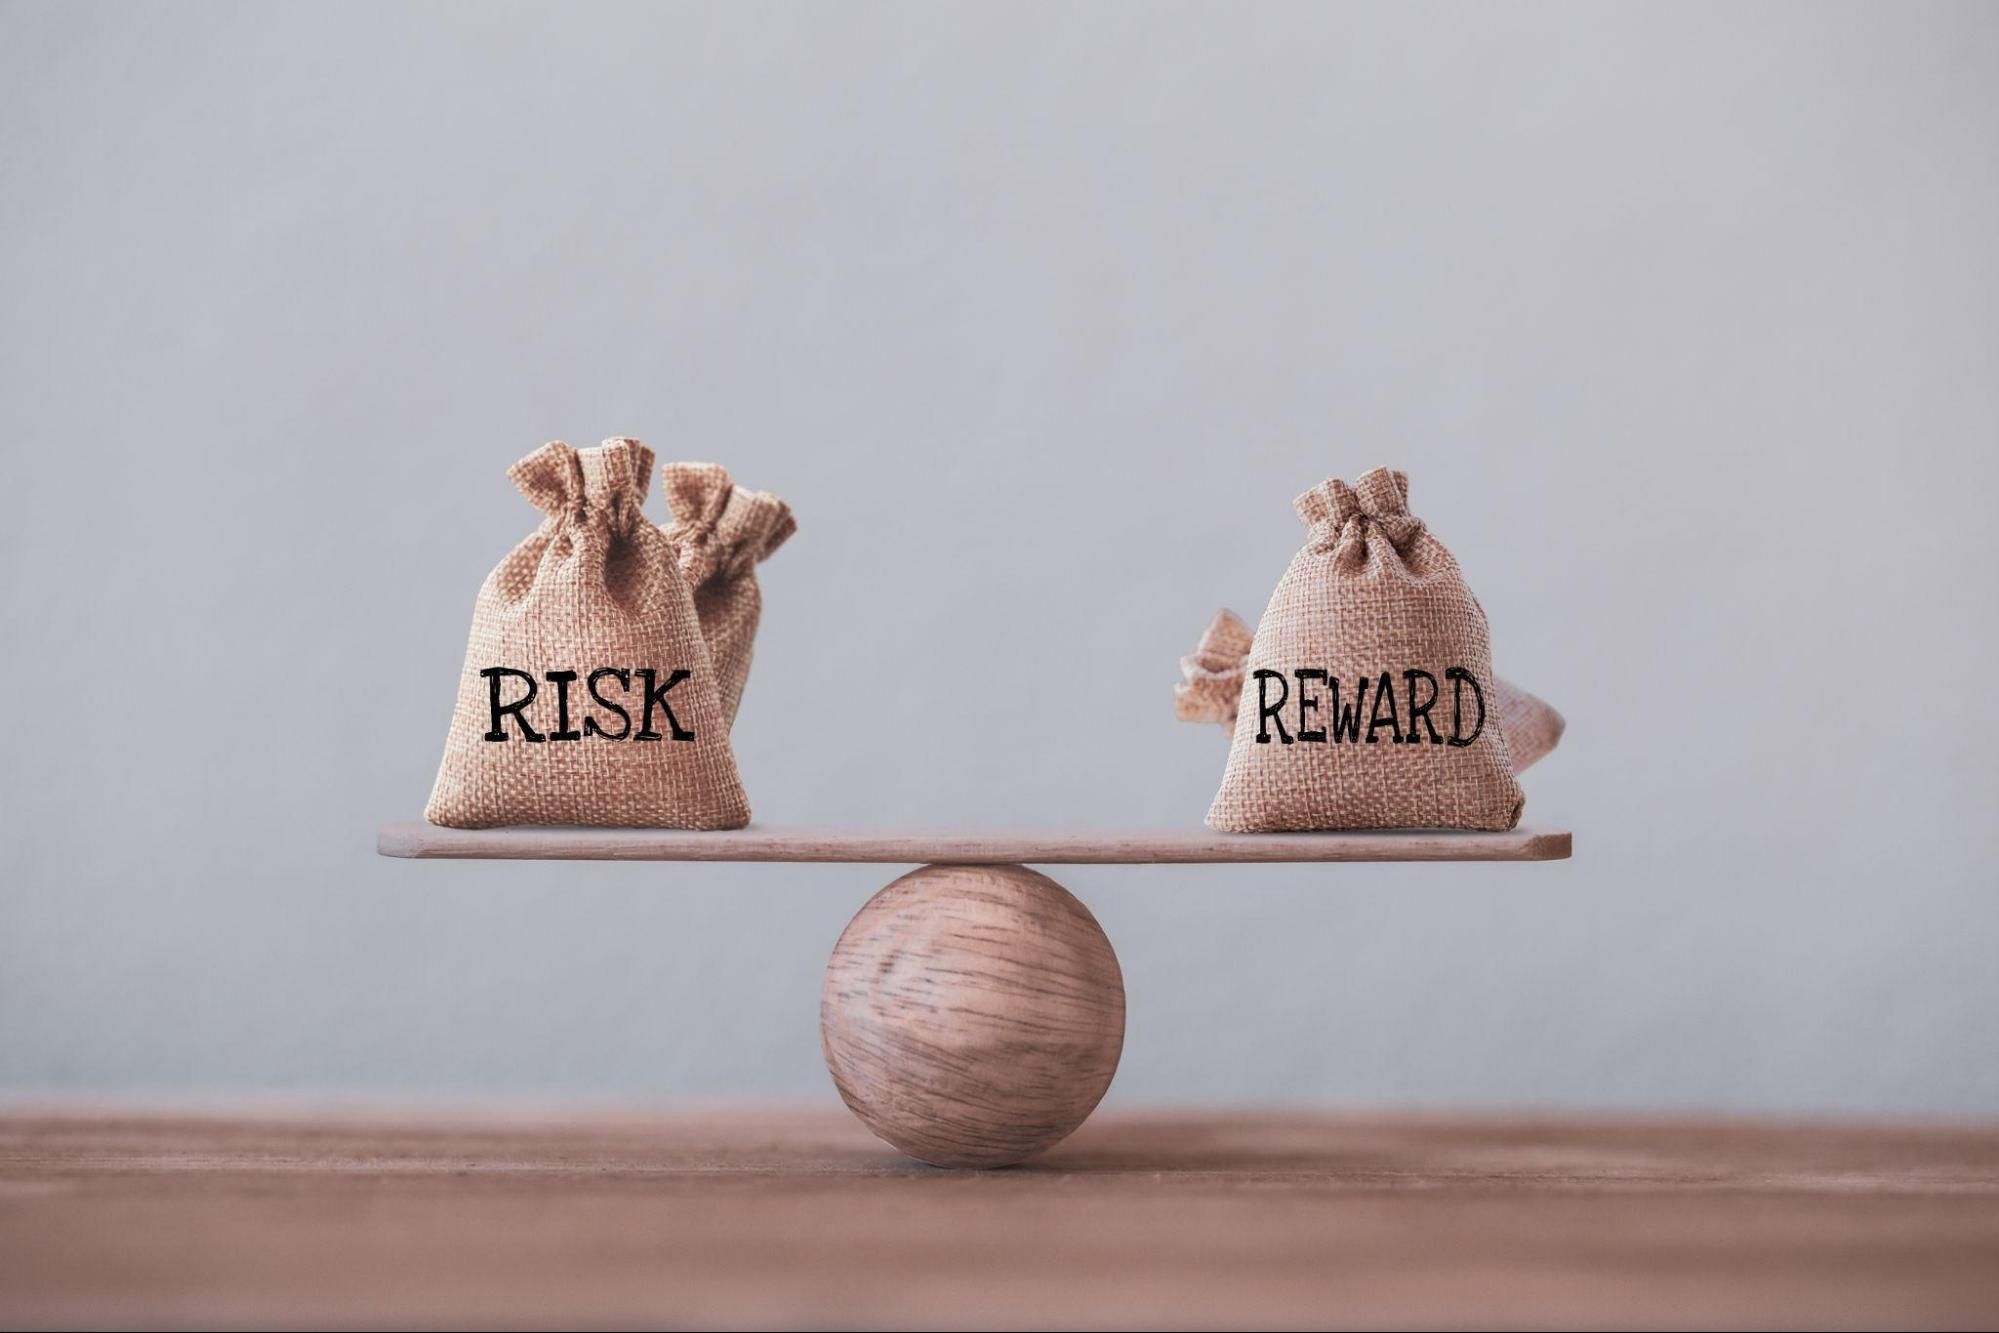 risk-reward illustration